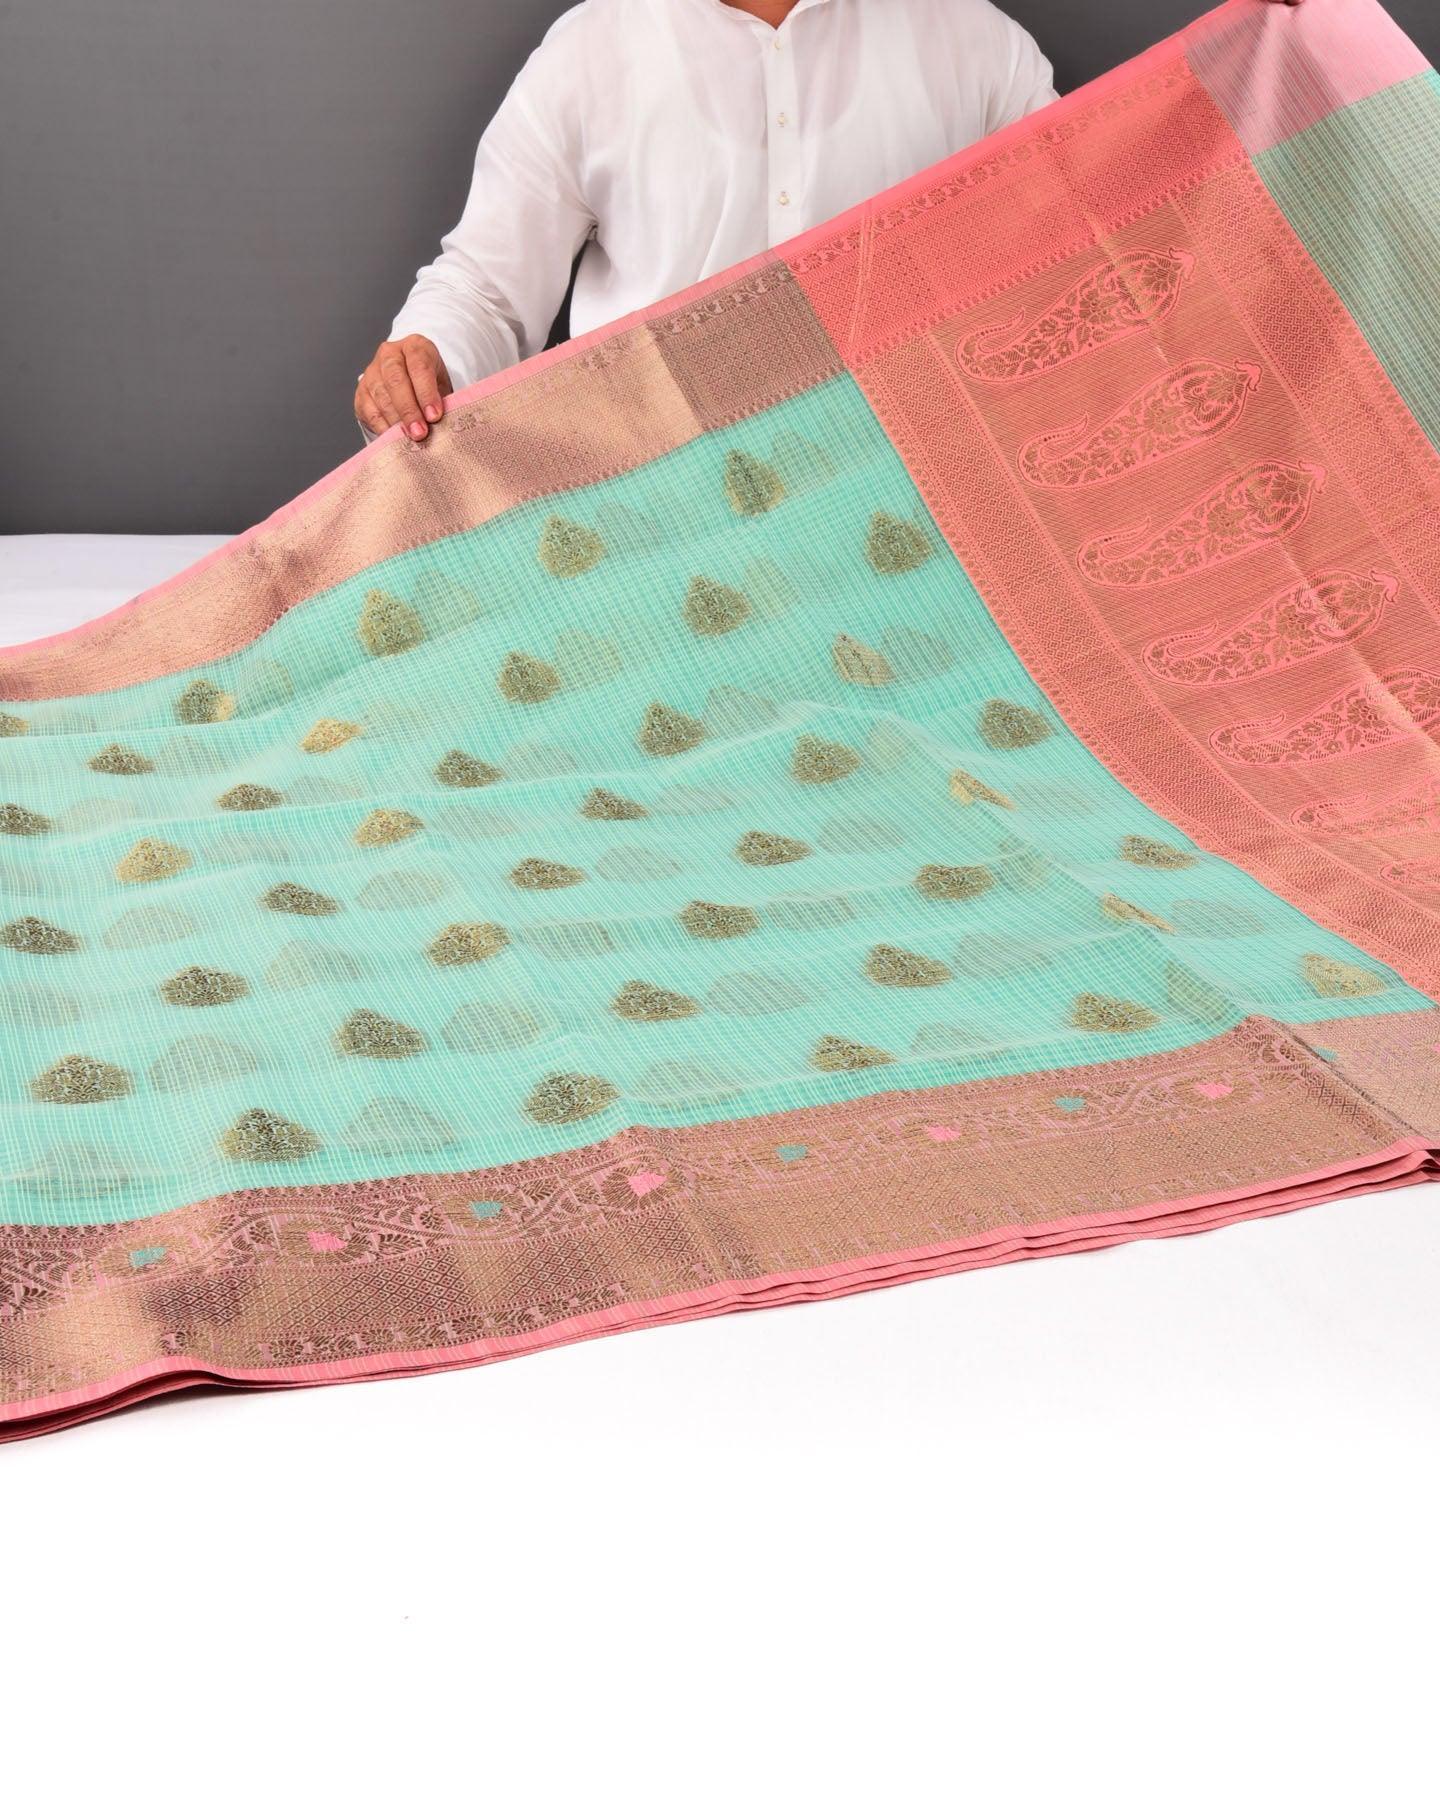 Green Banarasi Check Texture Antique Buta Cutwork Brocade Woven Cotton Silk Saree with Peach Border Pallu - By HolyWeaves, Benares